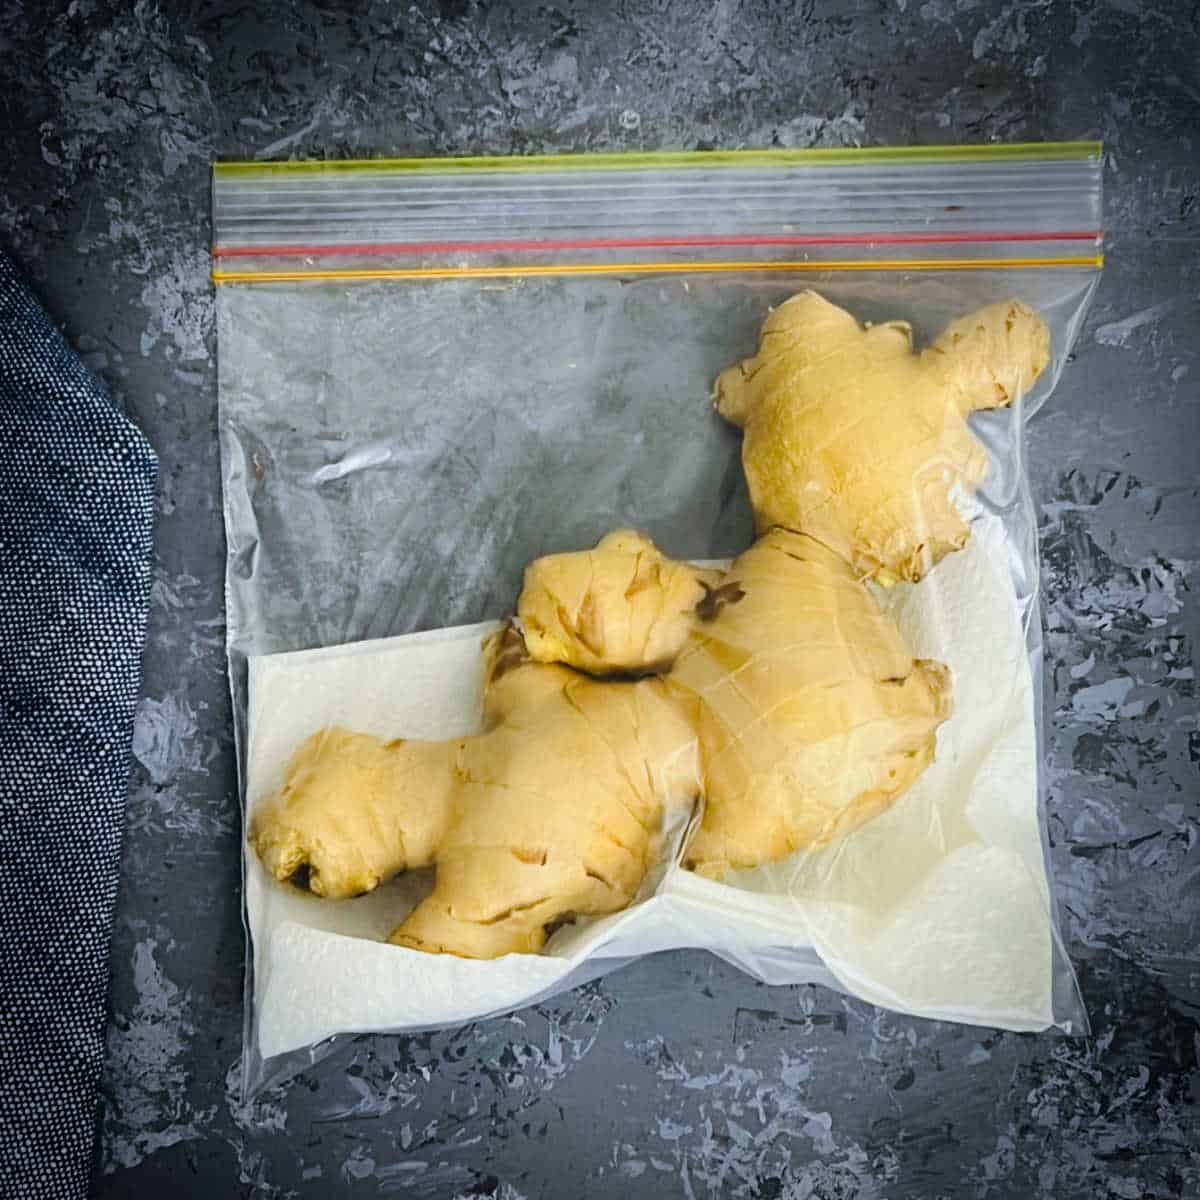 Ginger stored in ziplock bag.